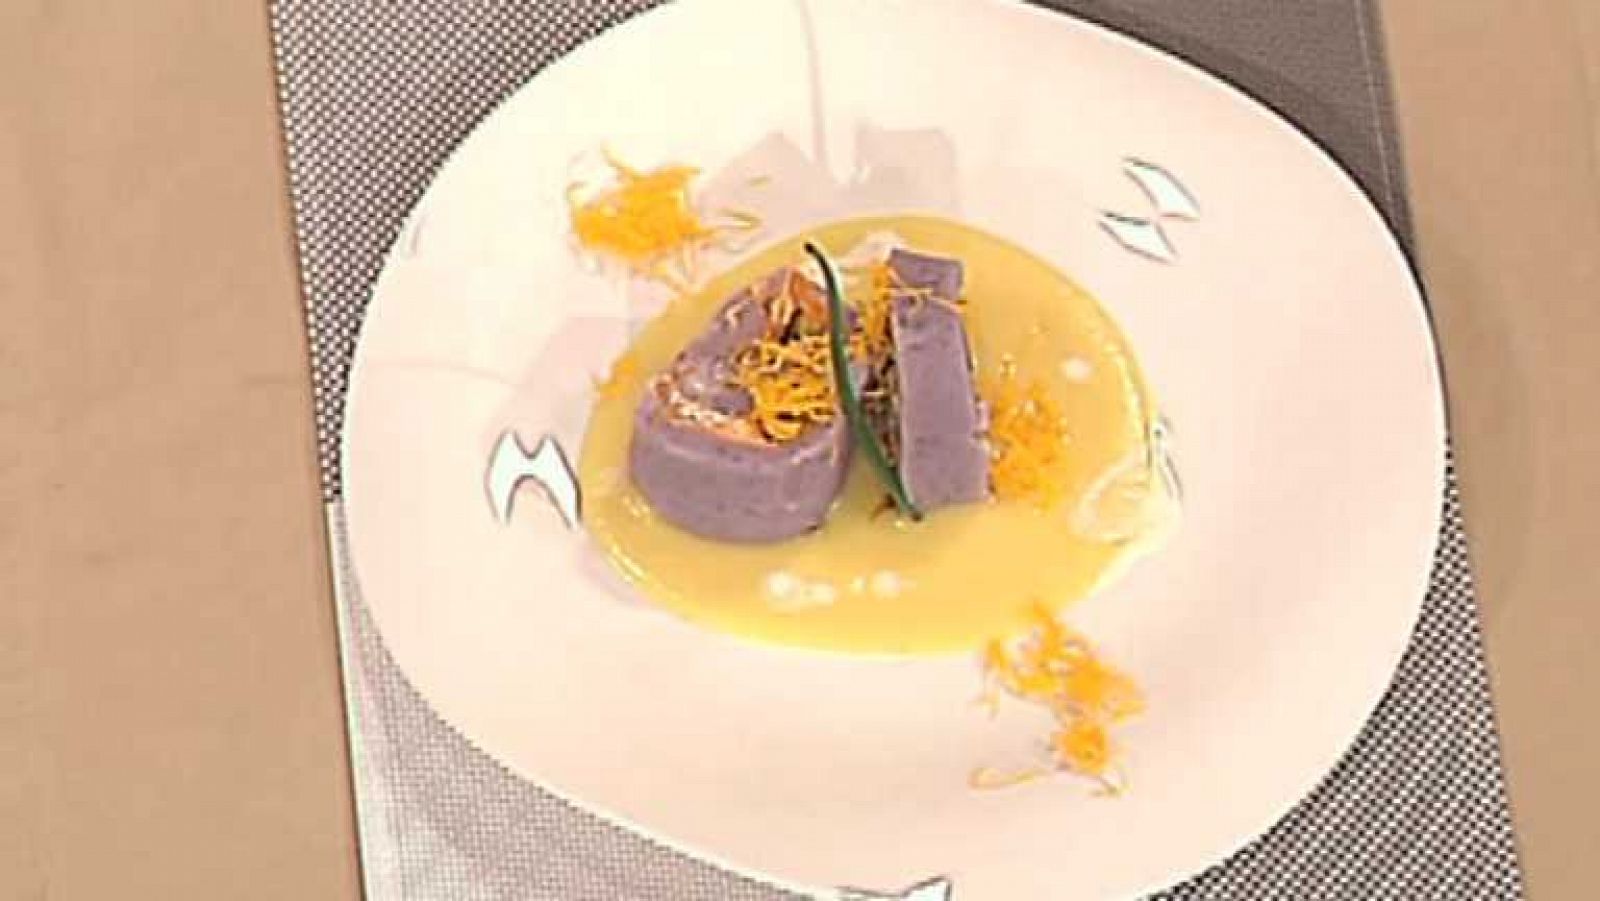 Cocina con Sergio -brazo de patata violeta con crema de puerro - Ver ahora